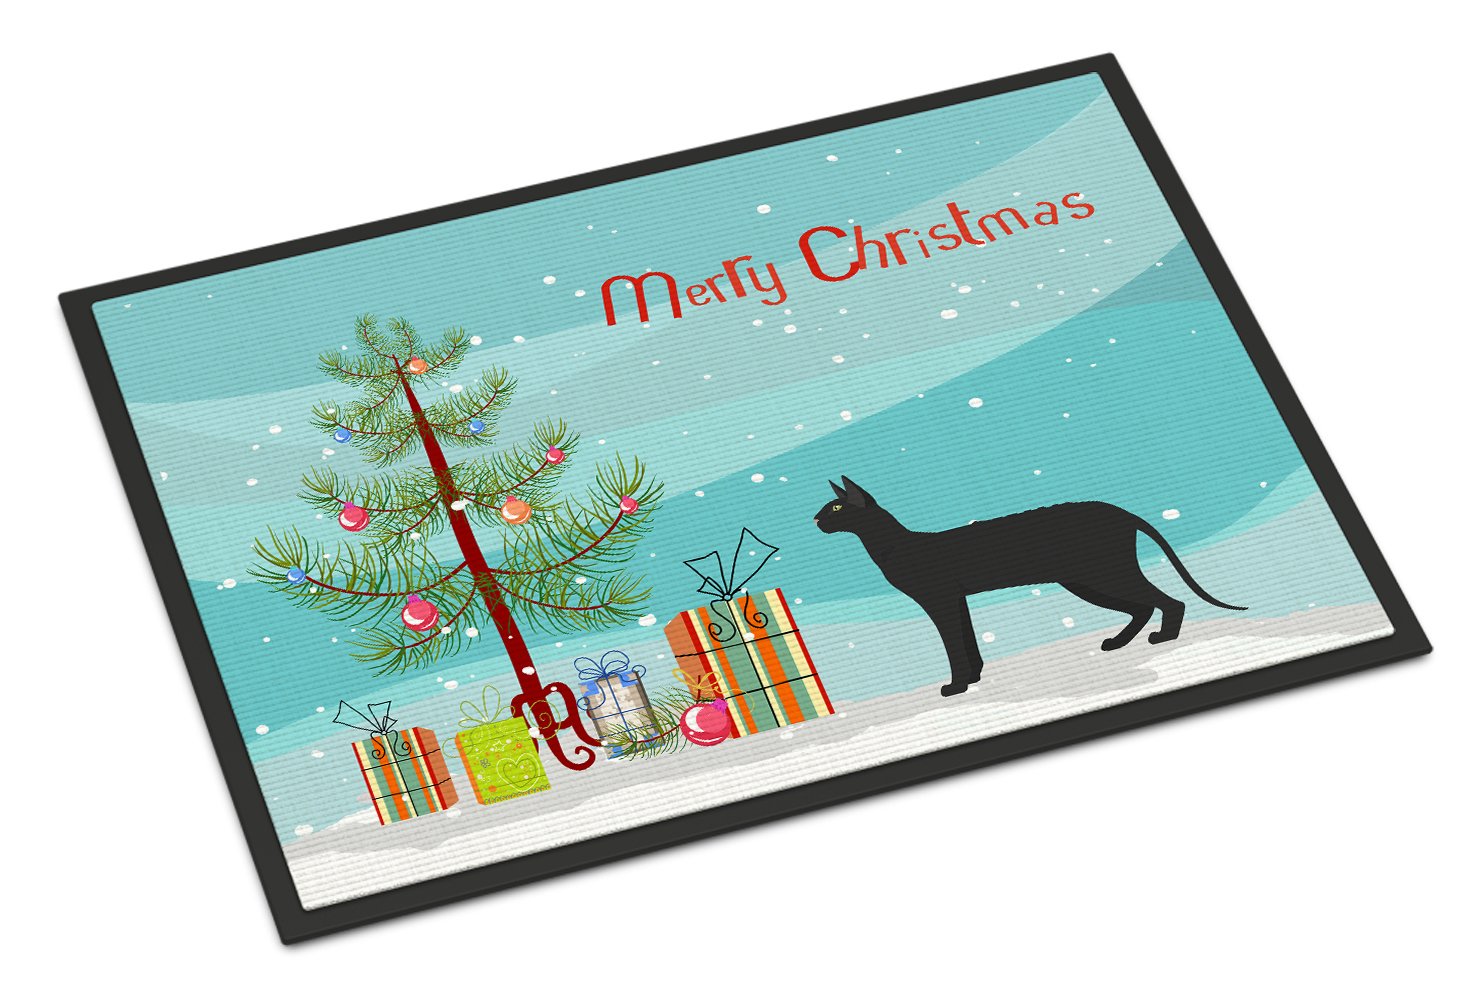 Black Cornish Rex Cat Merry Christmas Indoor or Outdoor Mat 24x36 CK4597JMAT by Caroline's Treasures